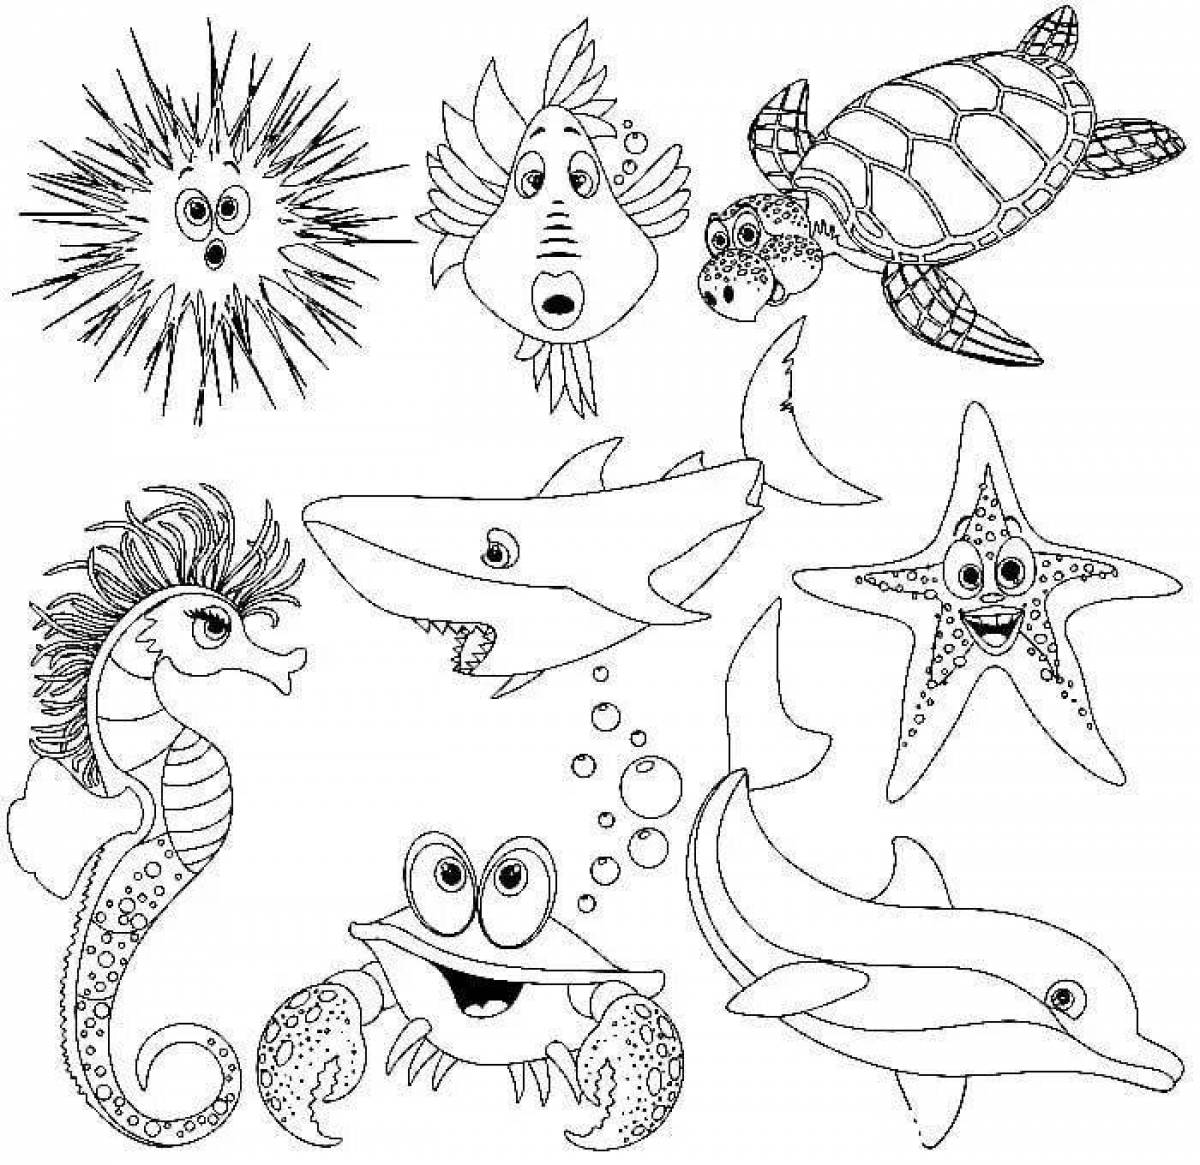 Захватывающая раскраска морской жизни для детей 6-7 лет